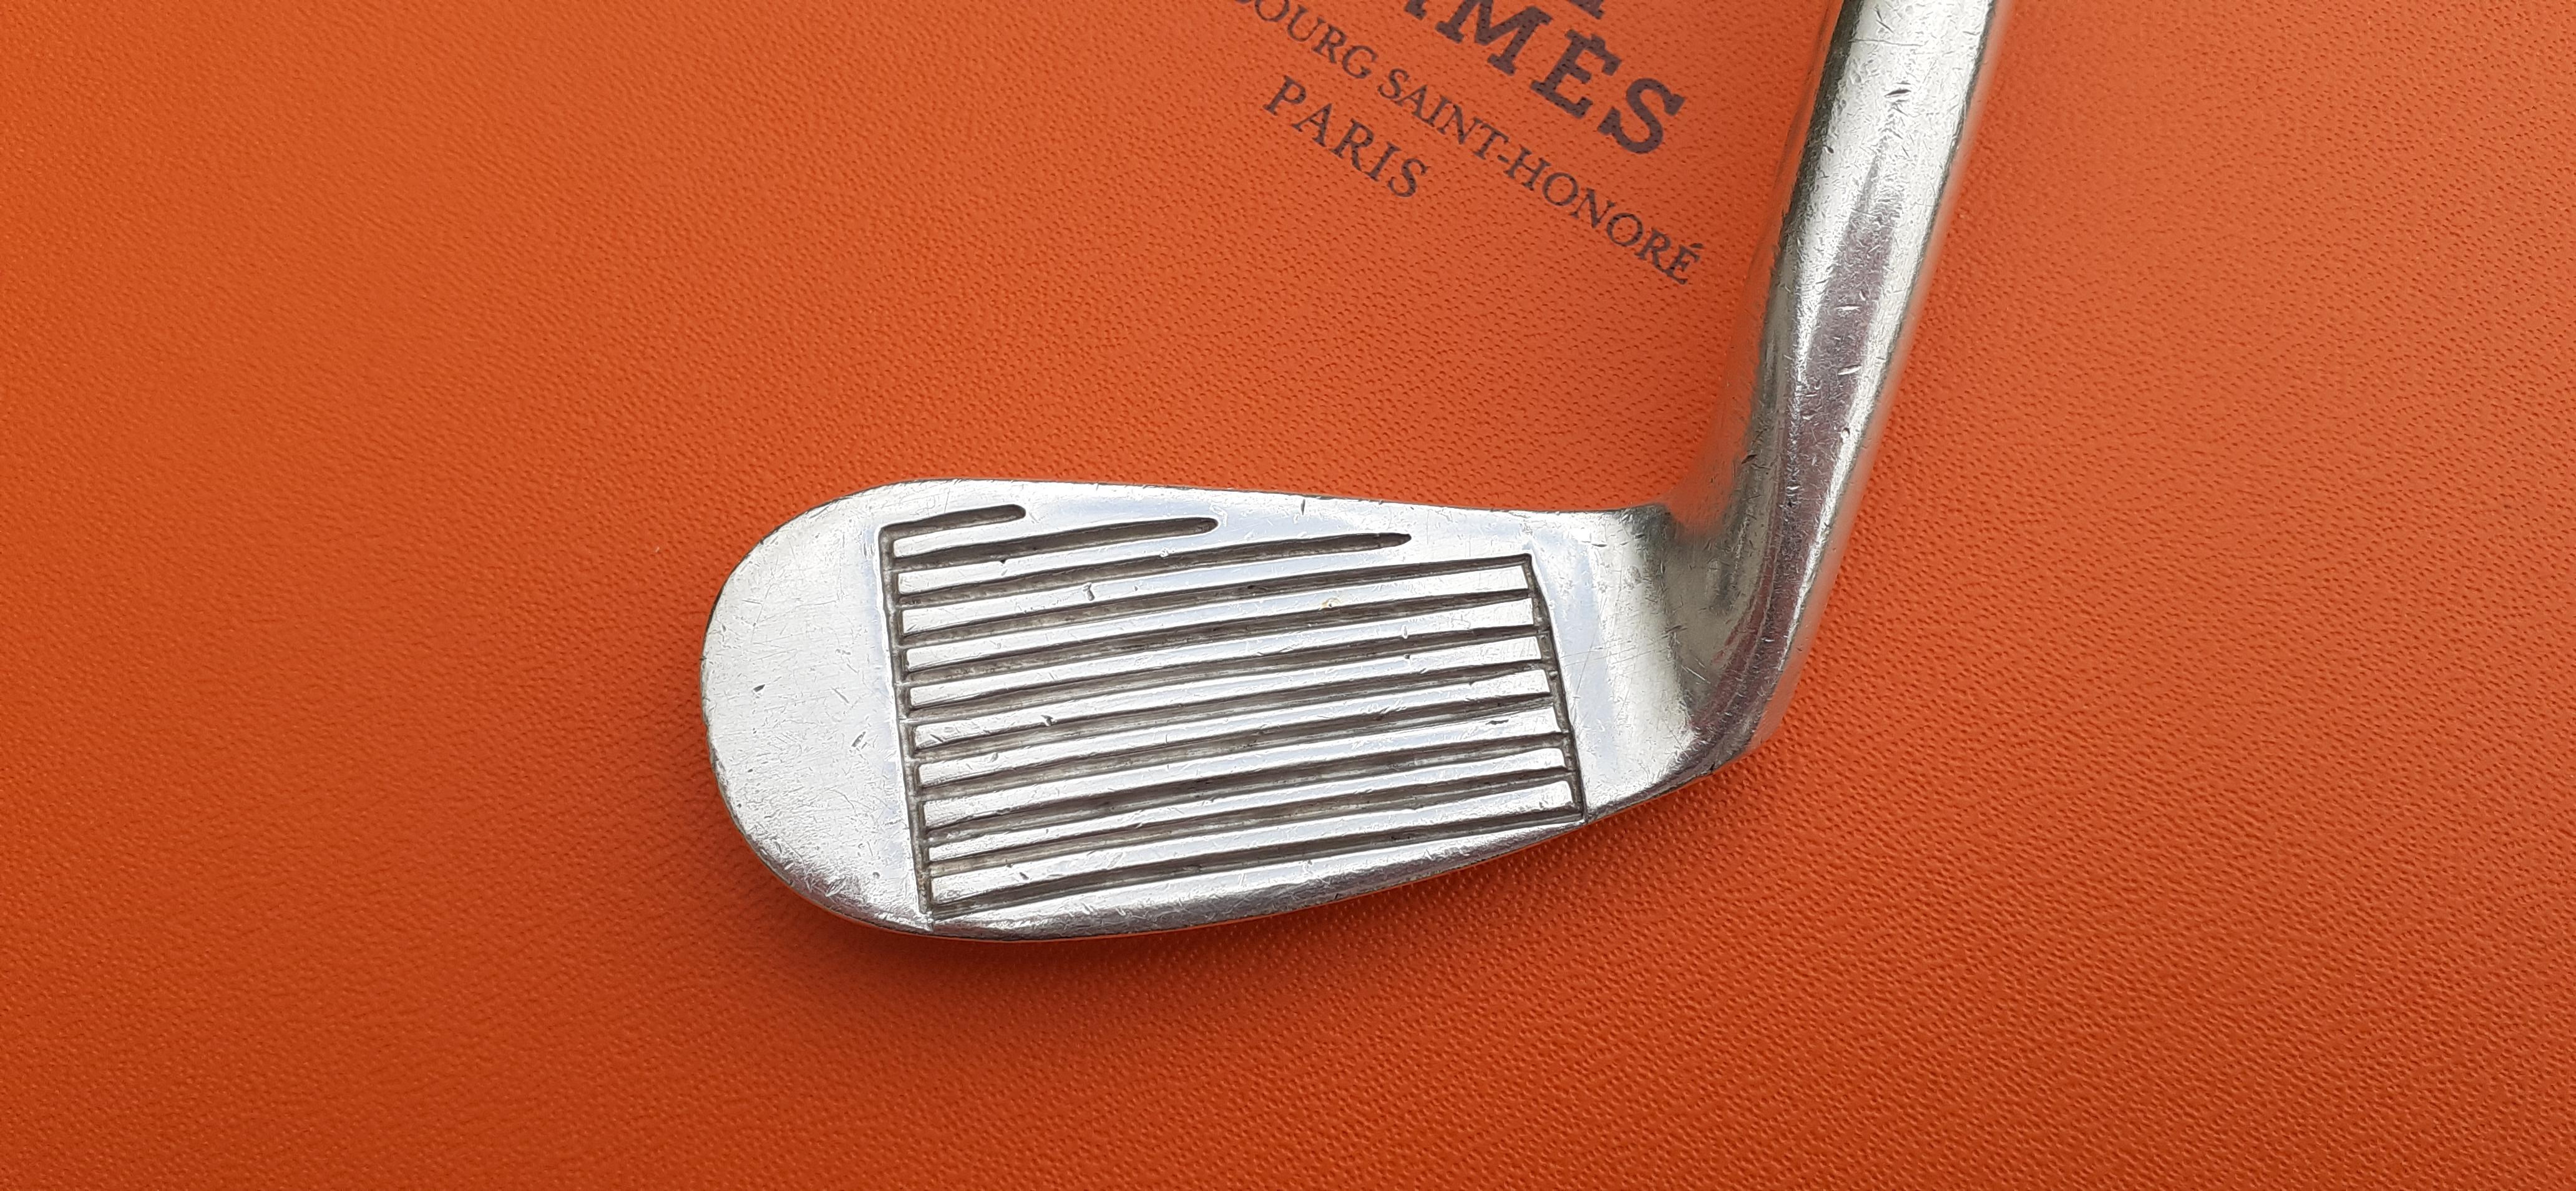 Exceptional Hermès Vintage Golf Club Shaped Bottle Opener For Sale 5